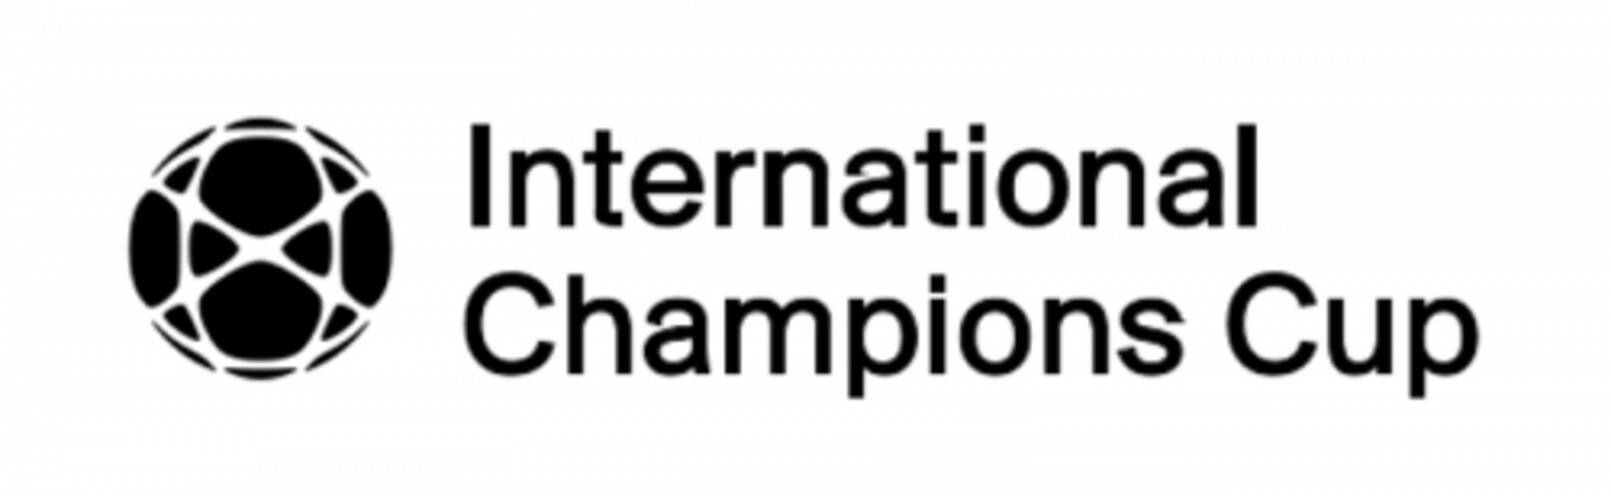 久保建英も参戦 Daznがインターナショナル チャンピオンズカップを全試合ライブ配信 19年6月27日 エキサイトニュース